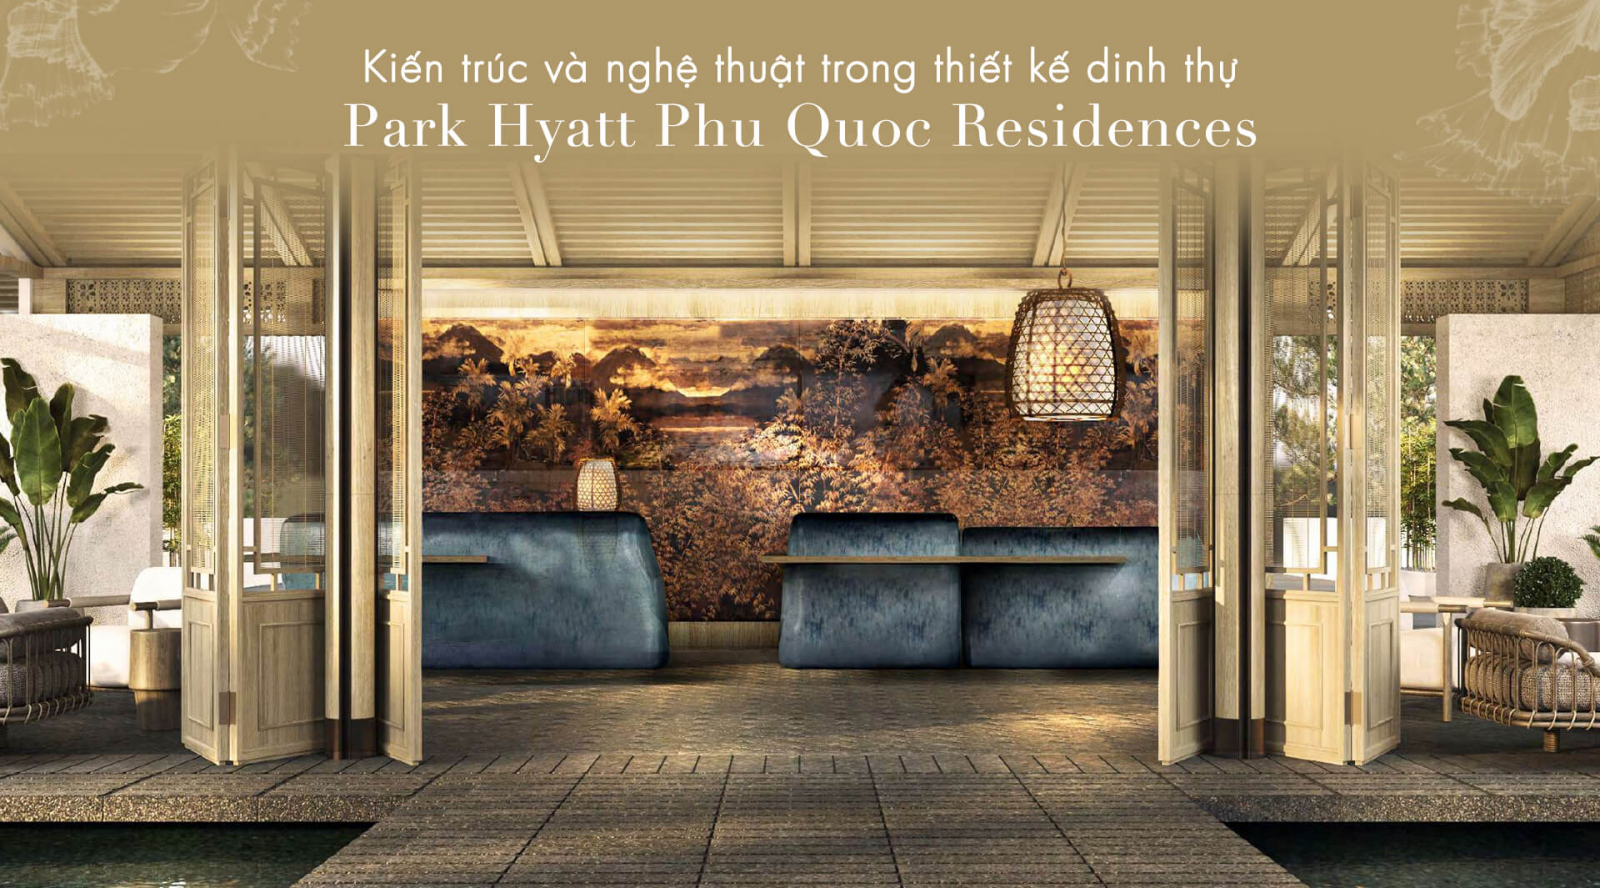 Park Hyatt Phu Quoc Residences